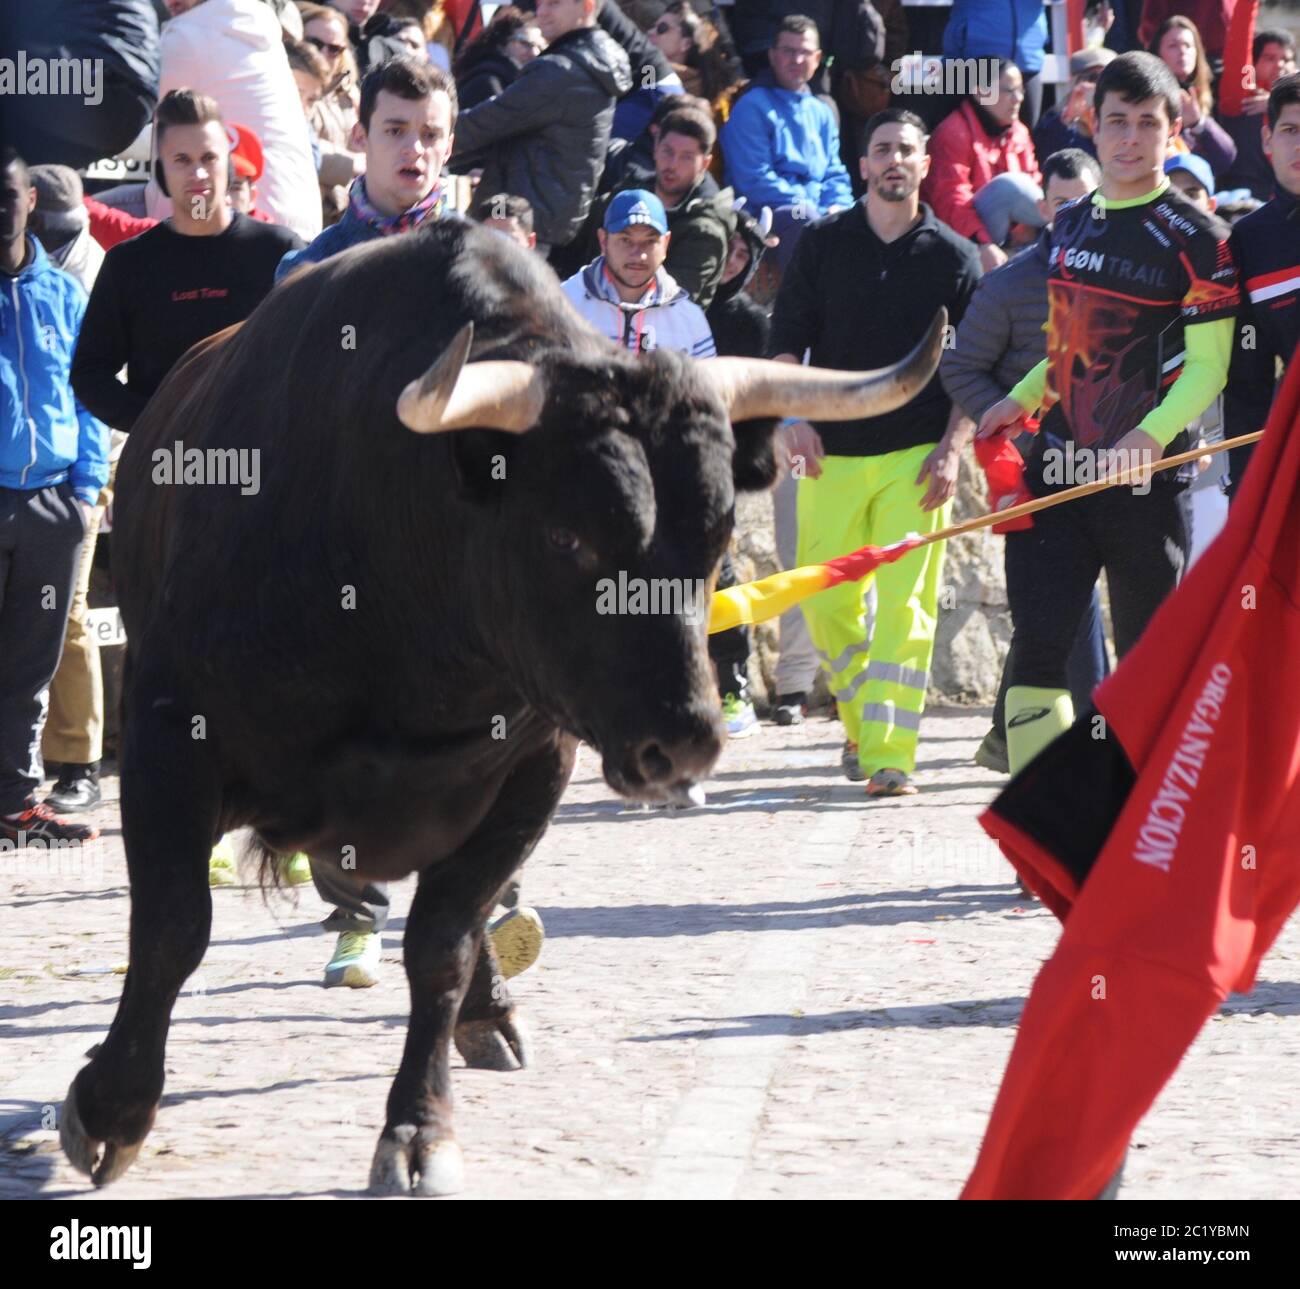 Corridas de toros, España Foto de stock